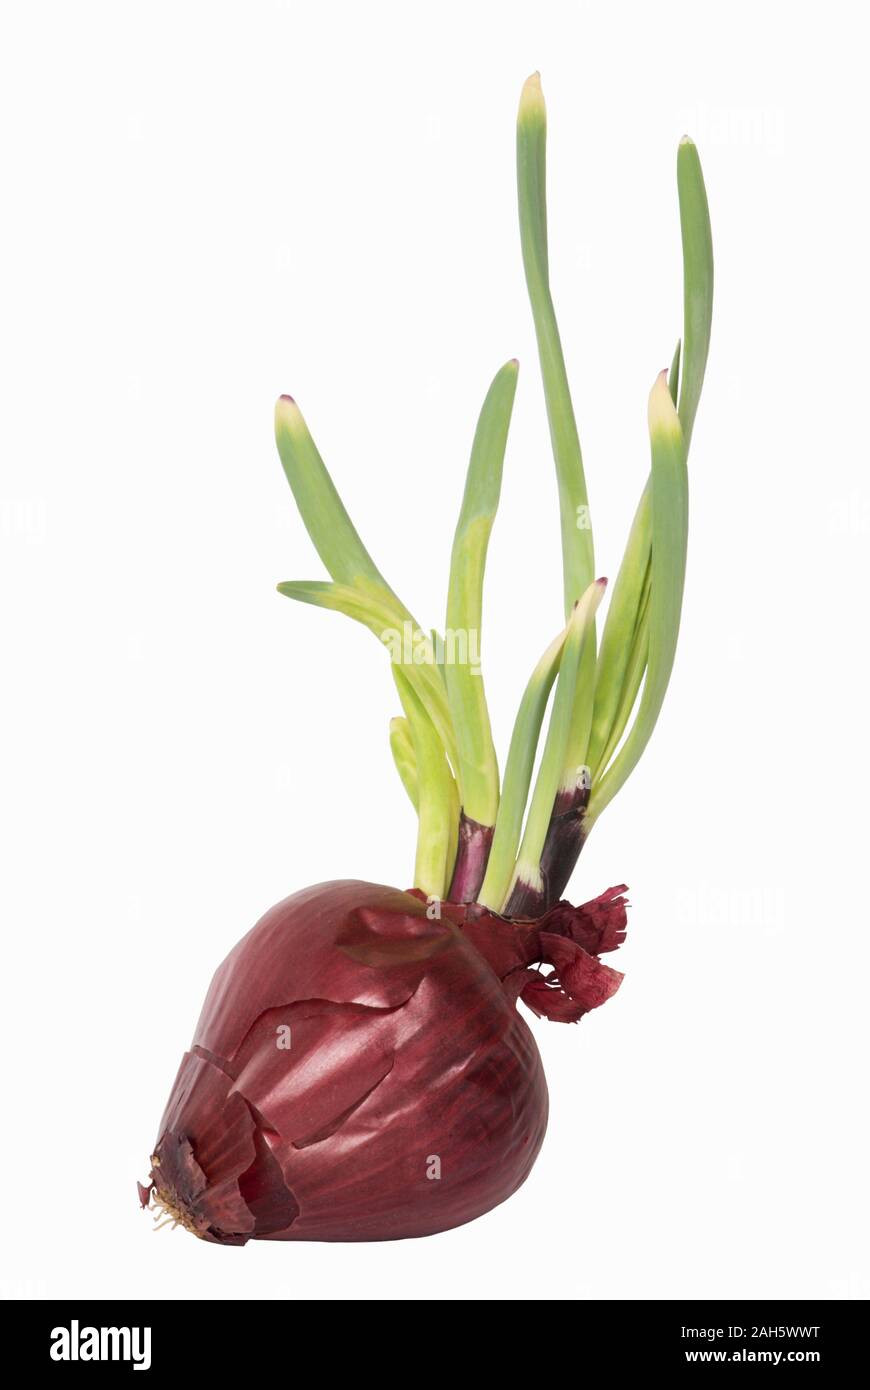 Nahaufnahme von einem rot gefärbten Spanisch Zwiebel mit Sprossen wachsen von oben. Dieses Bild ist auf einem weißen Hintergrund. Stockfoto